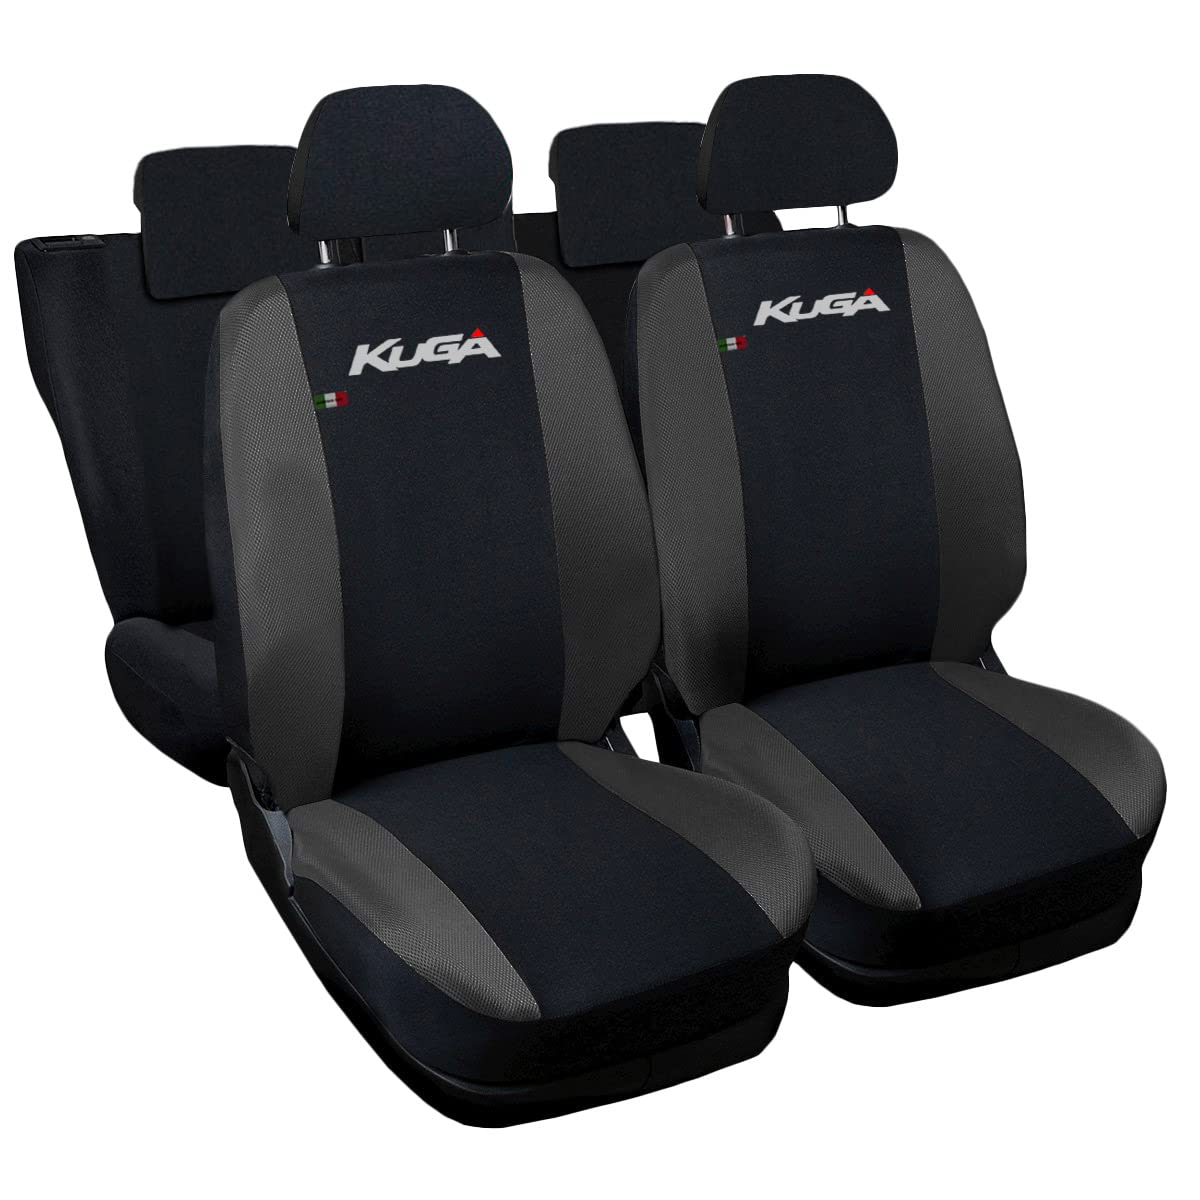 Lupex Shop Autositzbezüge kompatibel mit Kuga, Made in Italy, Polyestergewebe, kompletter Satz Vorder- und Rücksitze (Schwarz - Dunkelgrau) von Lupex Shop